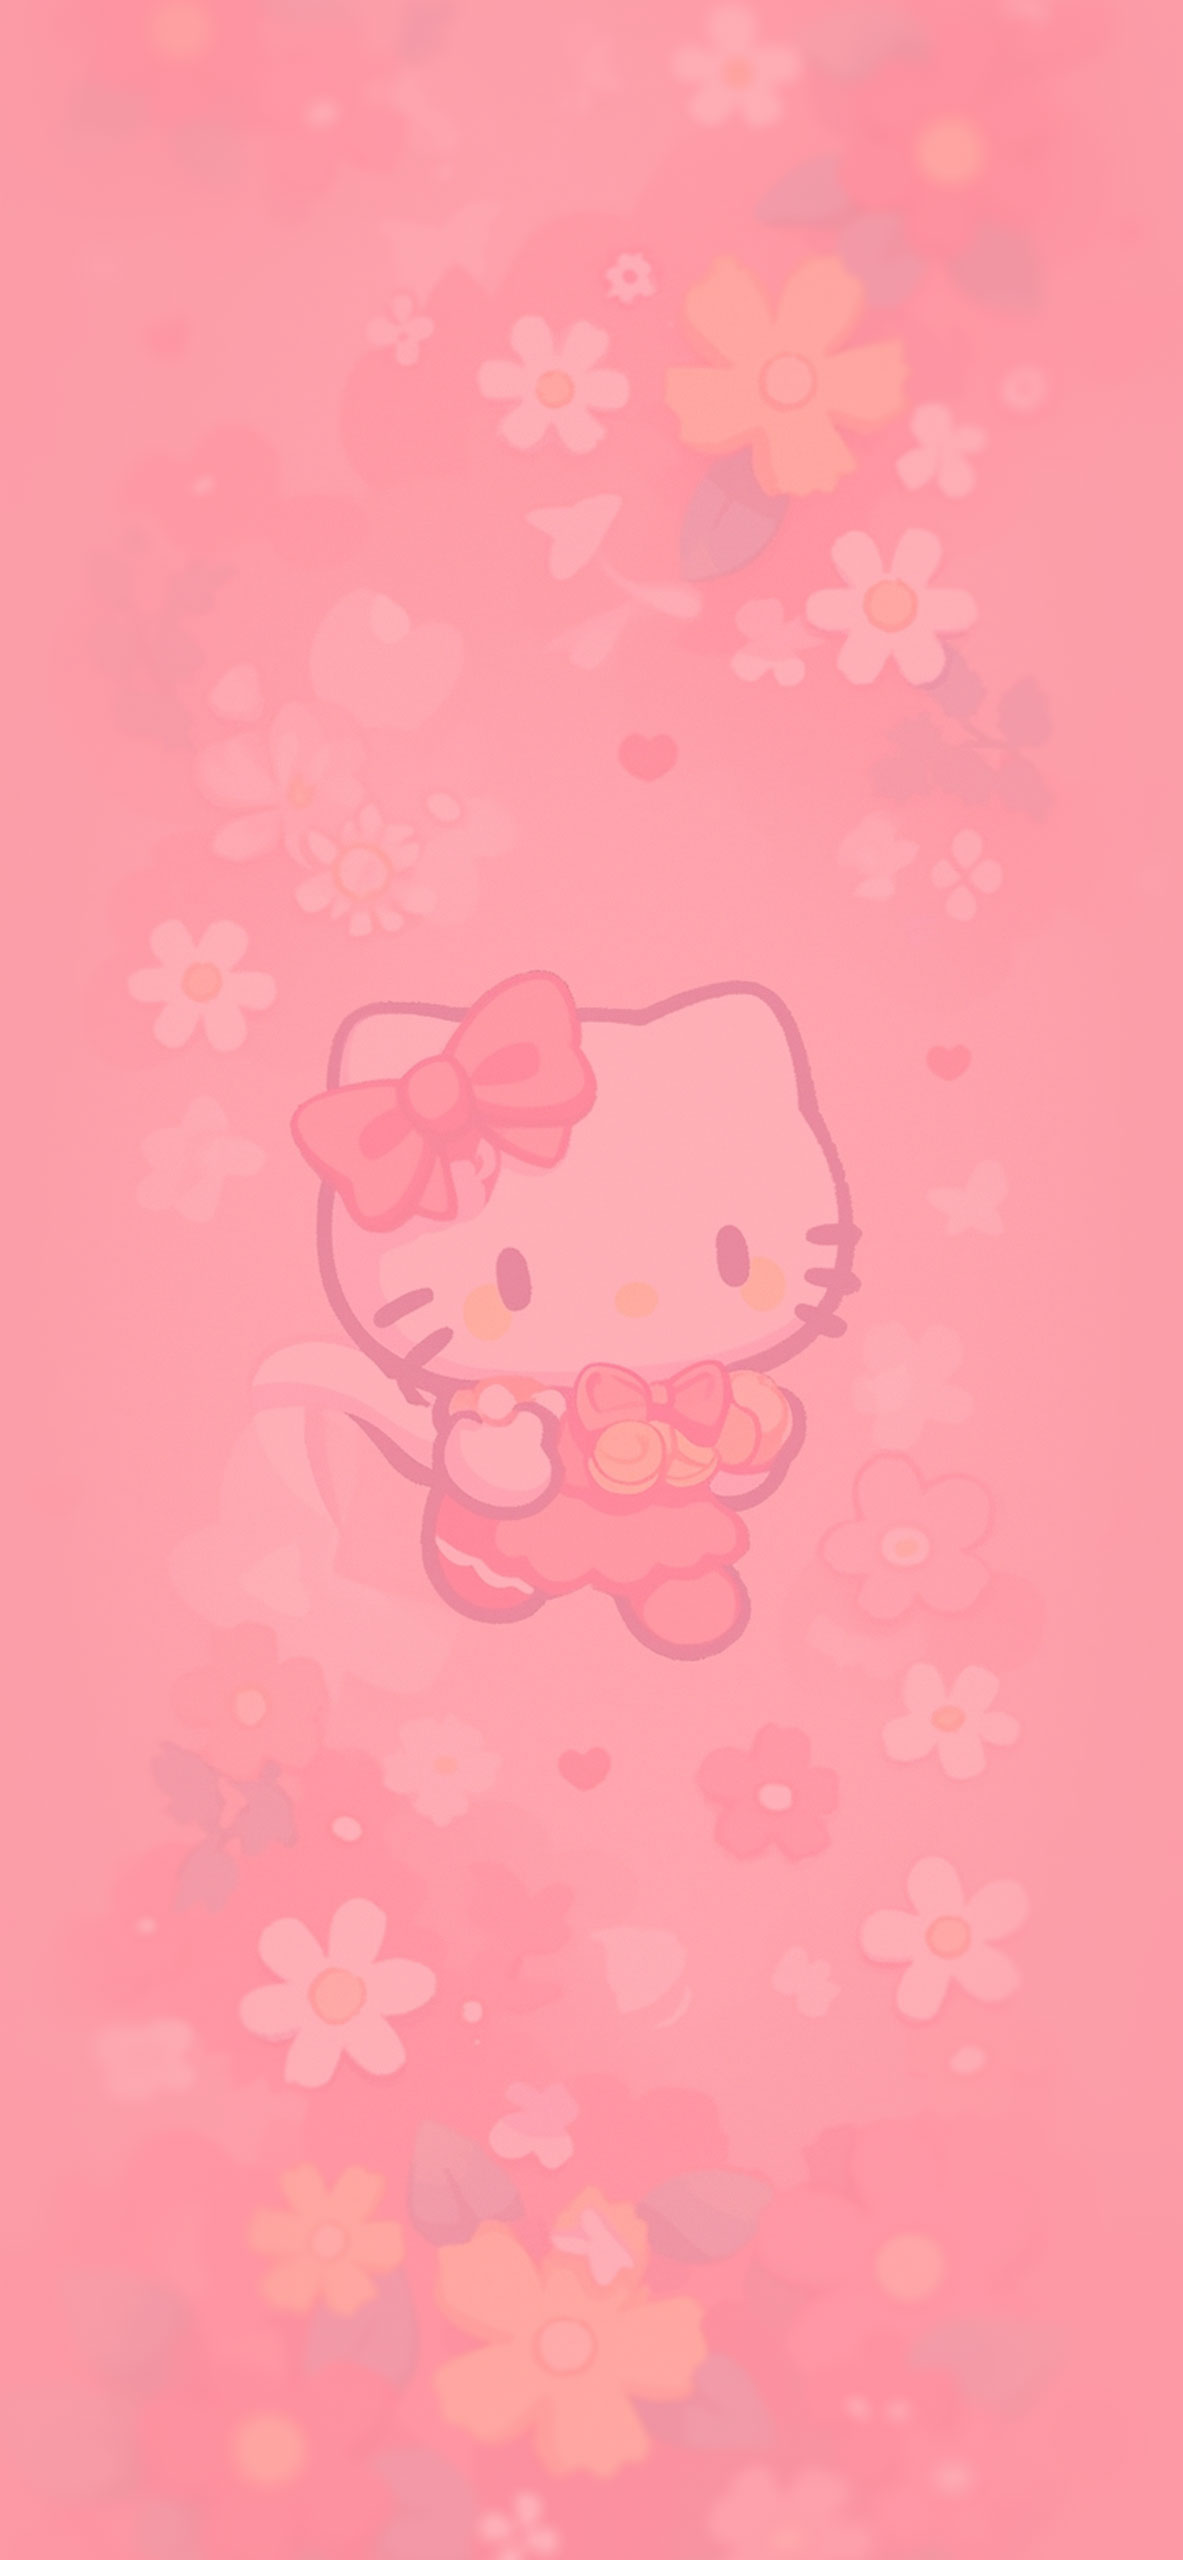 Hello Kitty & flowers pastel wallpaper Hello Kitty pink wallpa